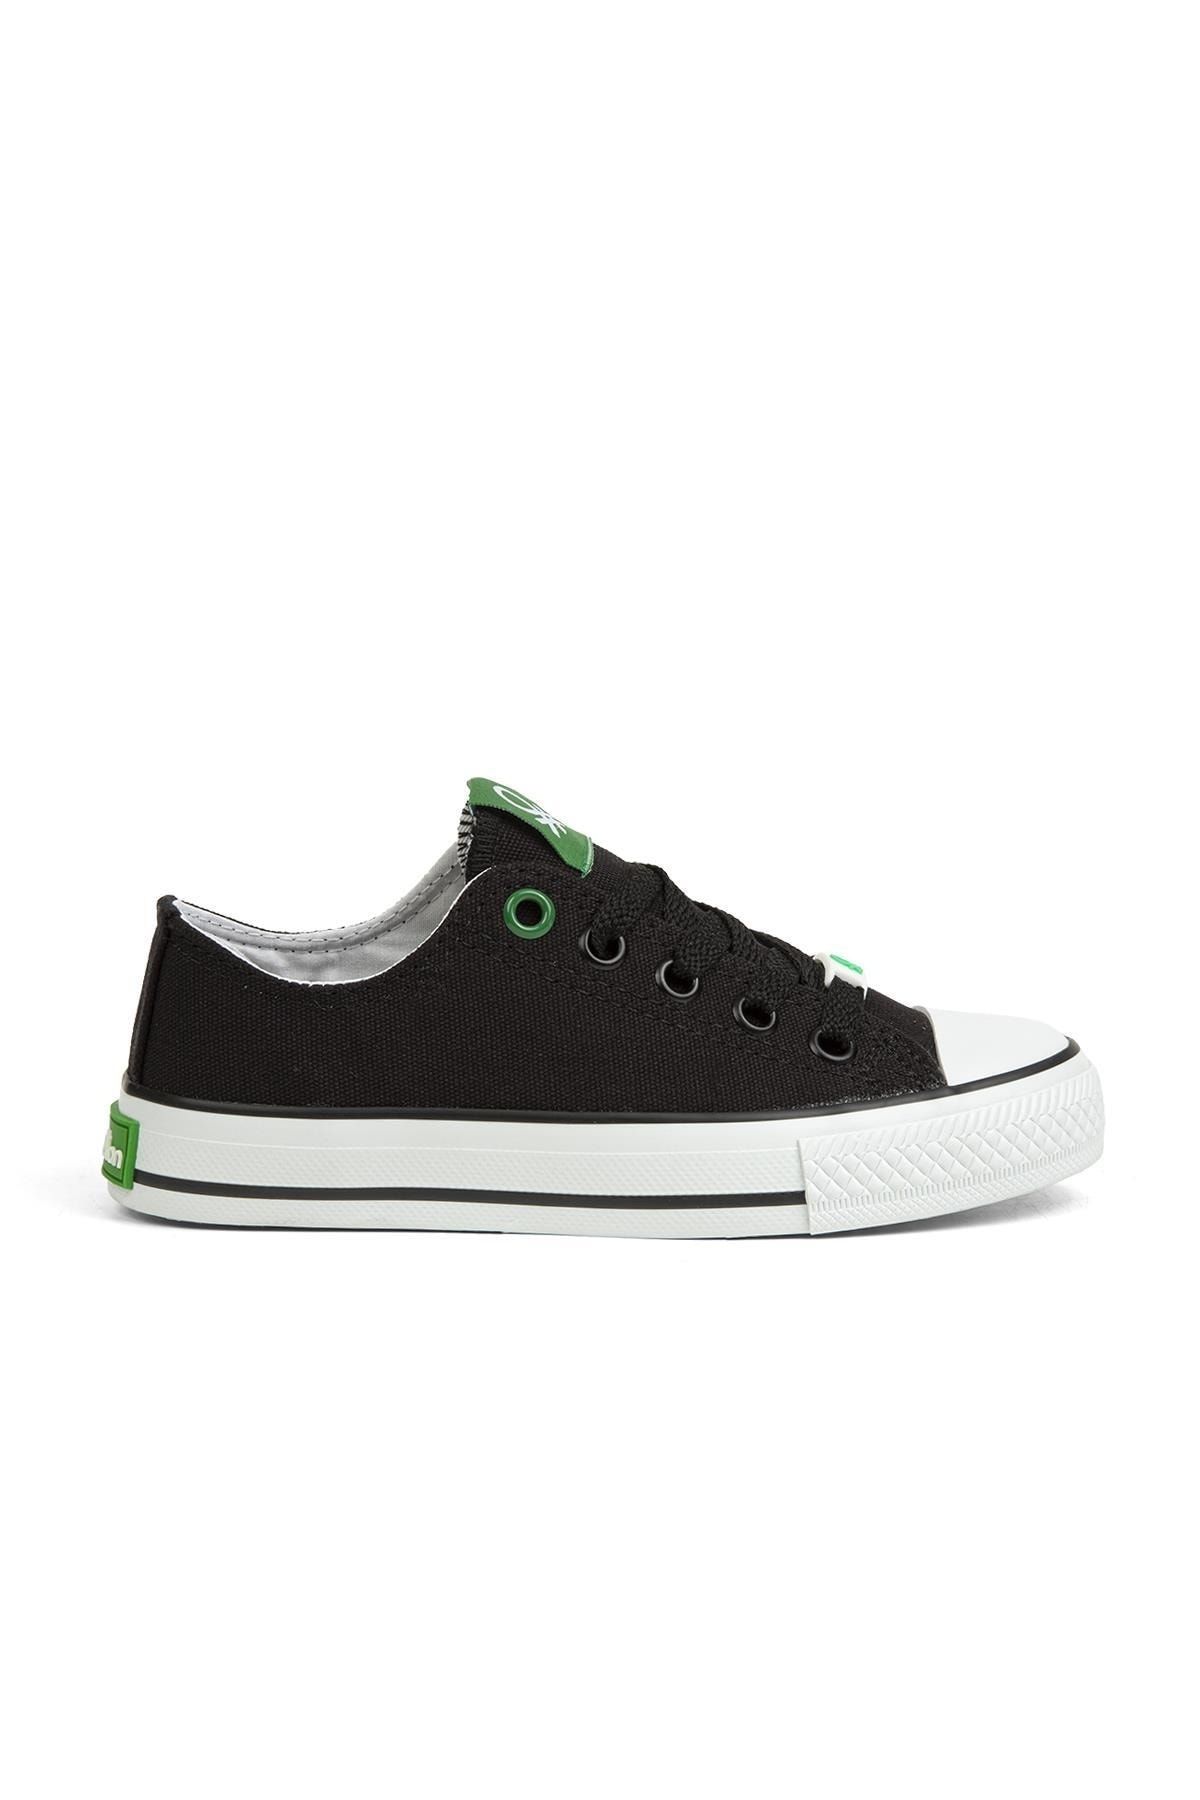 Benetton ® | Bn-30685-3374 Siyah - Çocuk Spor Ayakkabı